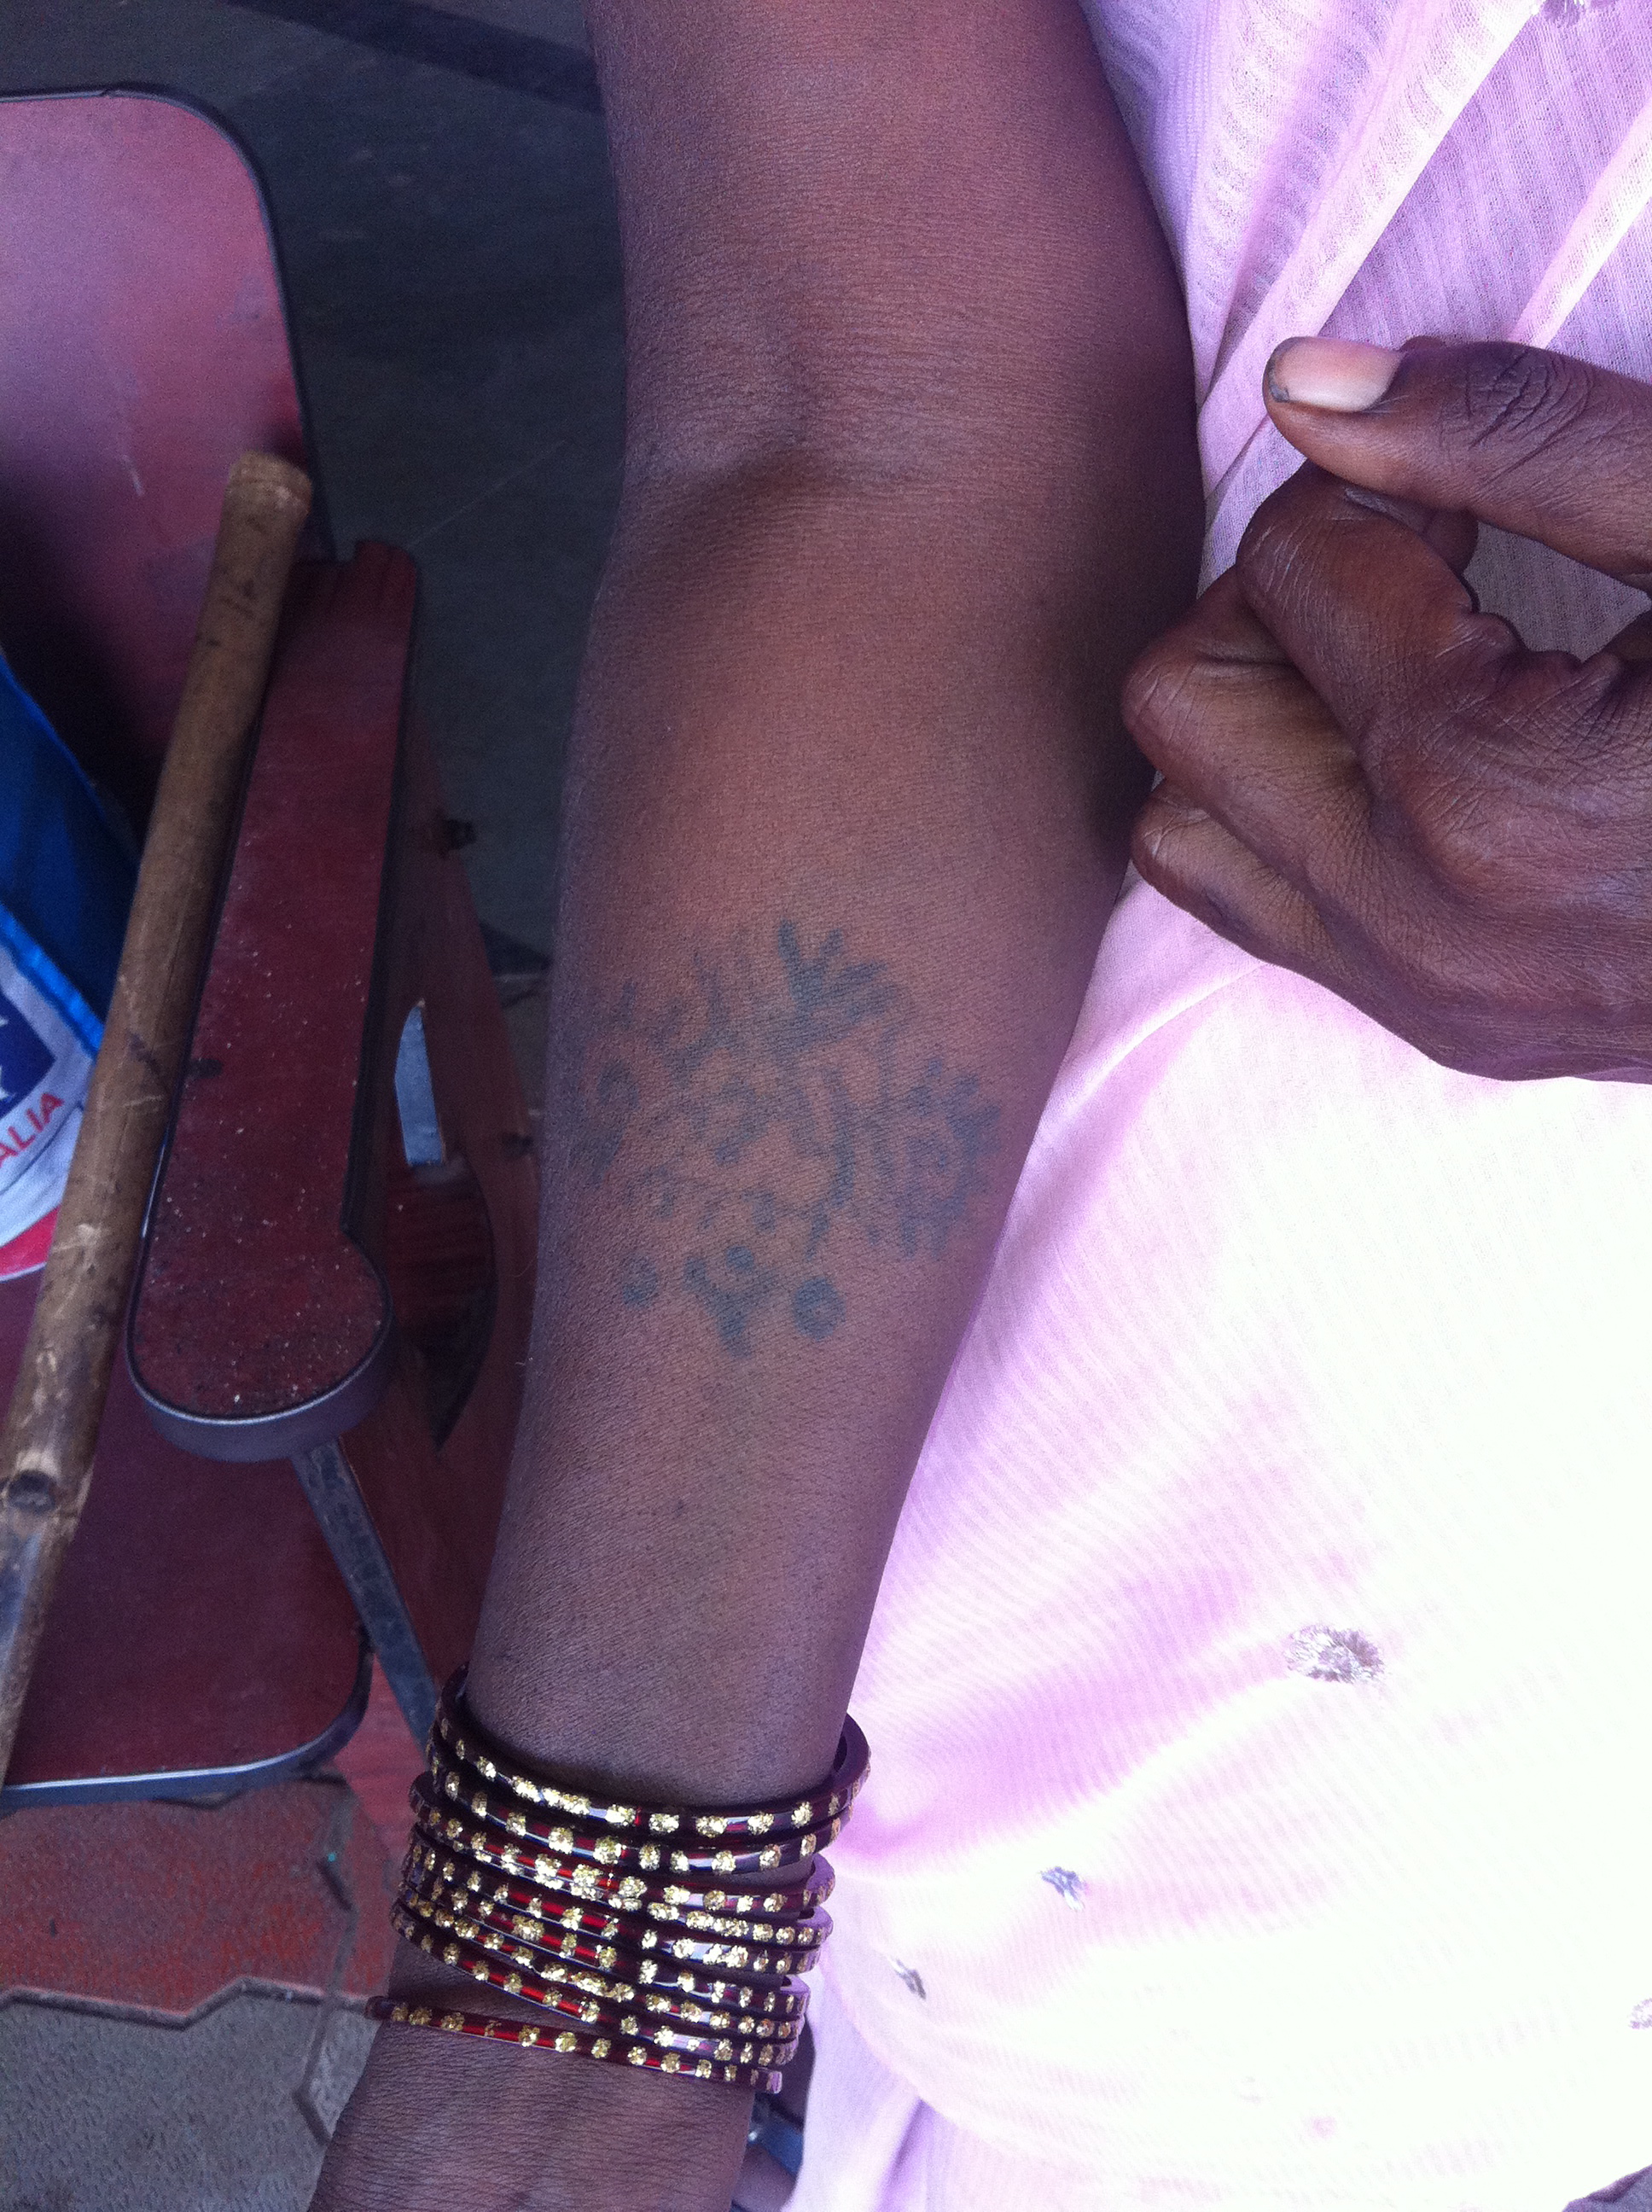 Indian Tattoos Sang Bleu